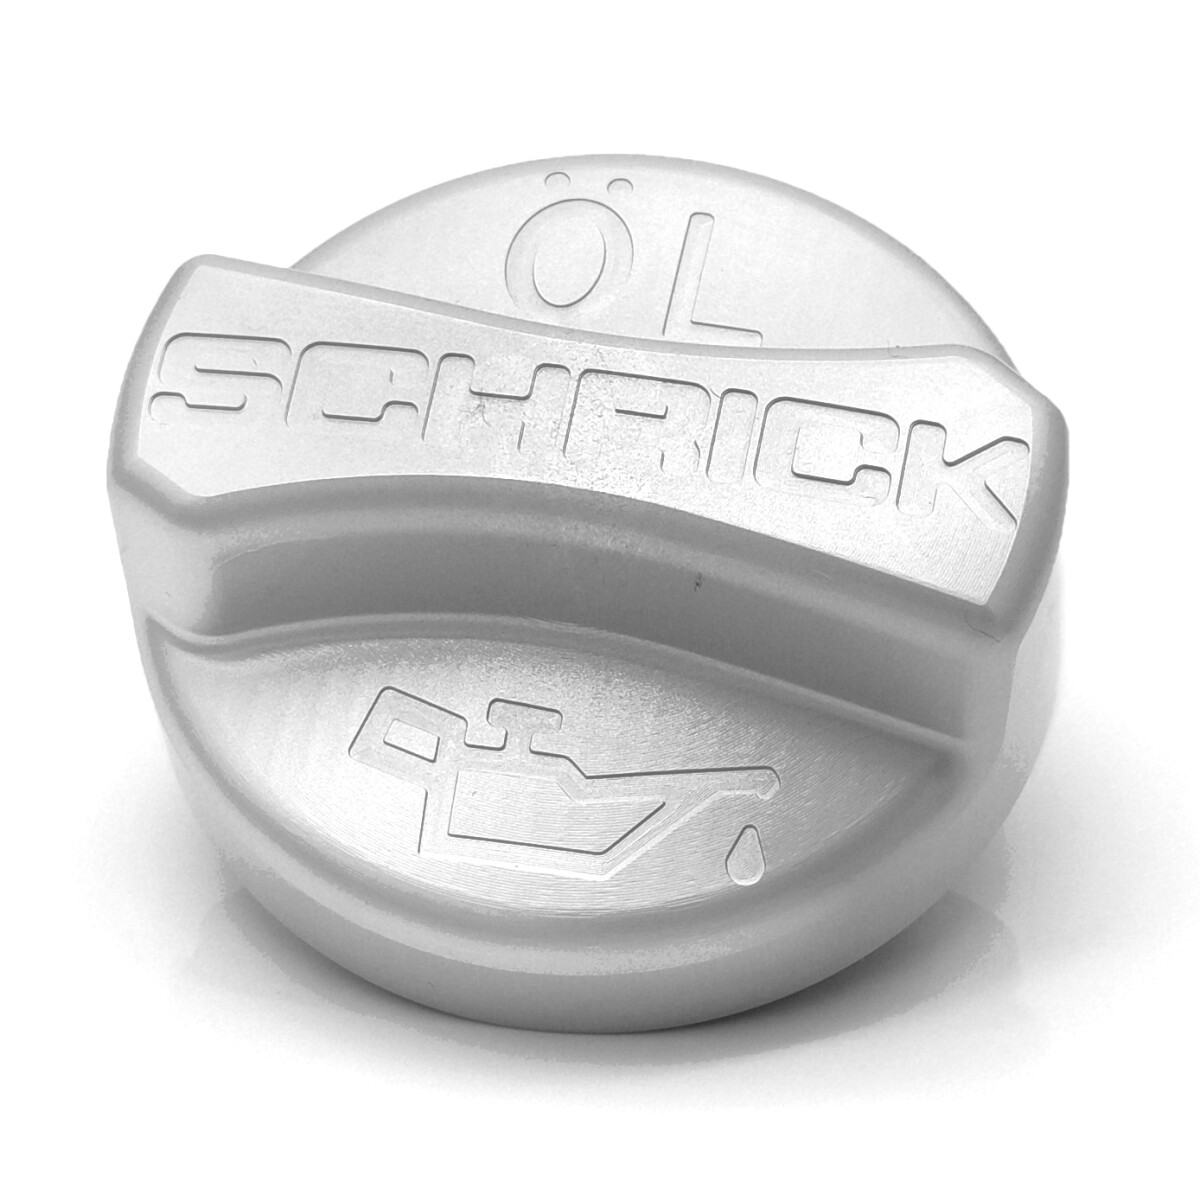 Schrick Verschlussdeckel/Öldeckel für Öleinfüllstutzen für VW Polo 86C (auch G40), Golf 1+2 (auch G60)+3+4, Corrado uvm. - Schrick 001411203-00)